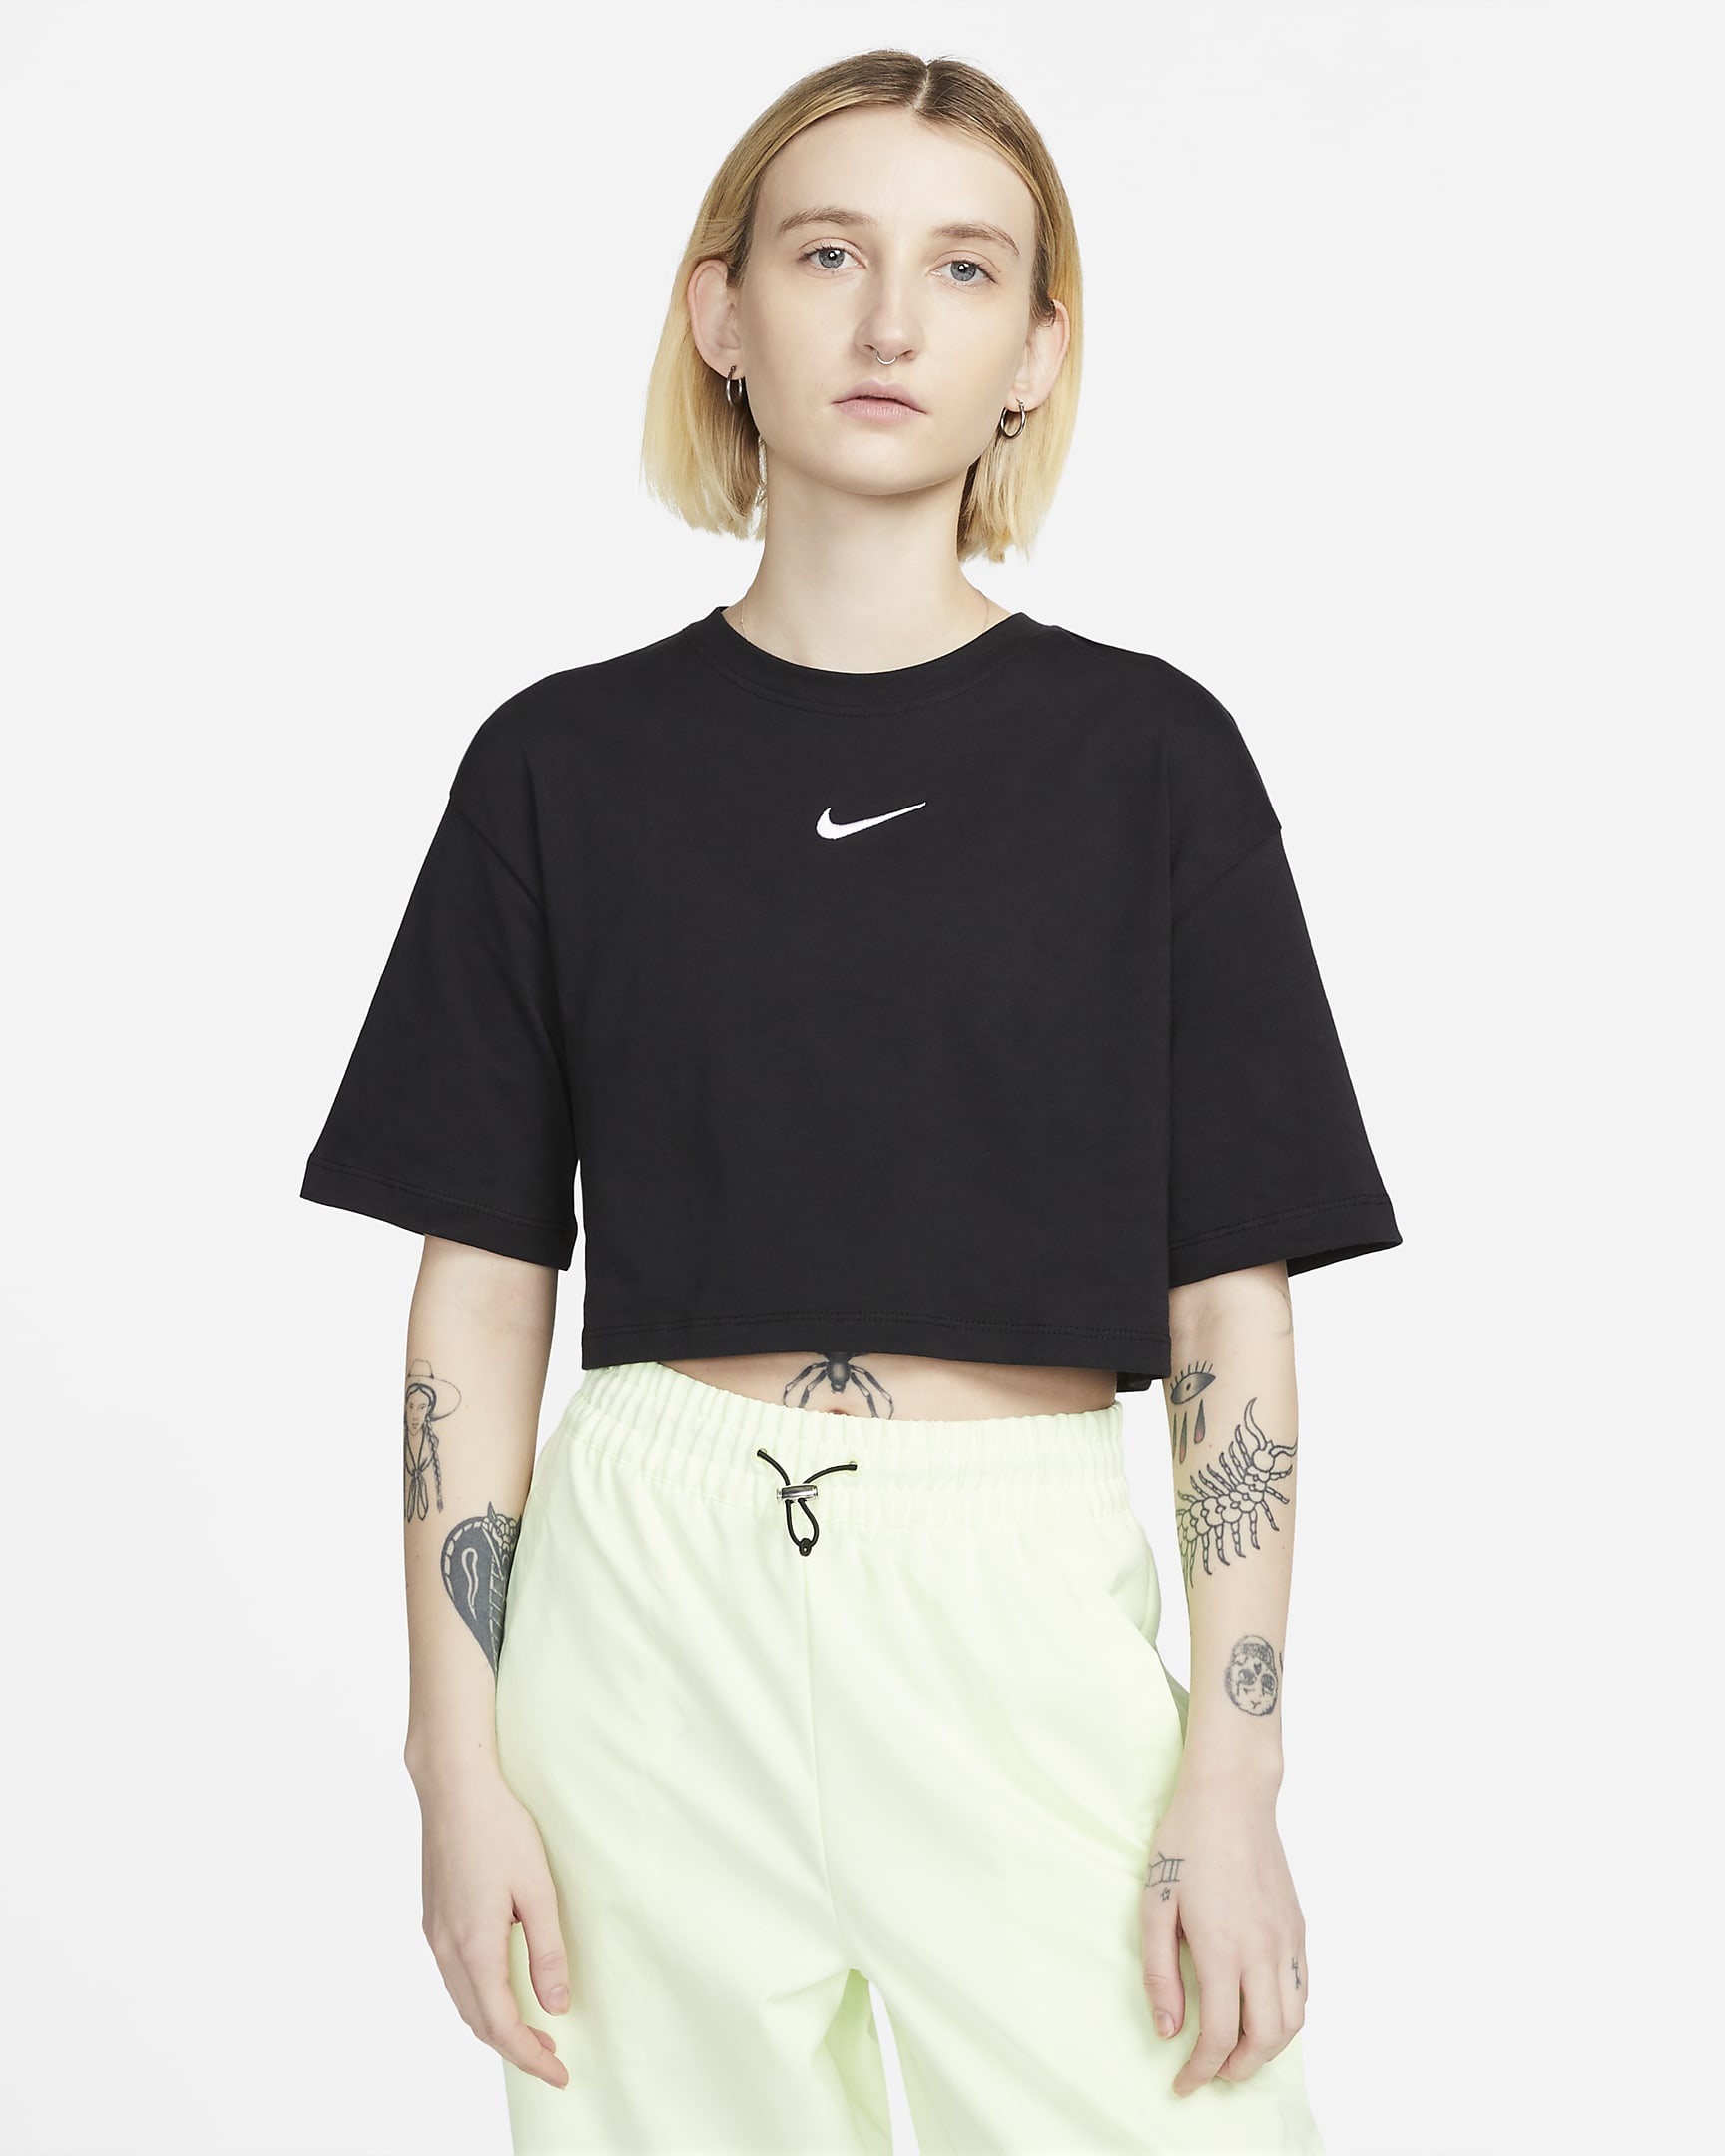 Nike Sportswear kort T-skjorte til dame - Svart/Hvit